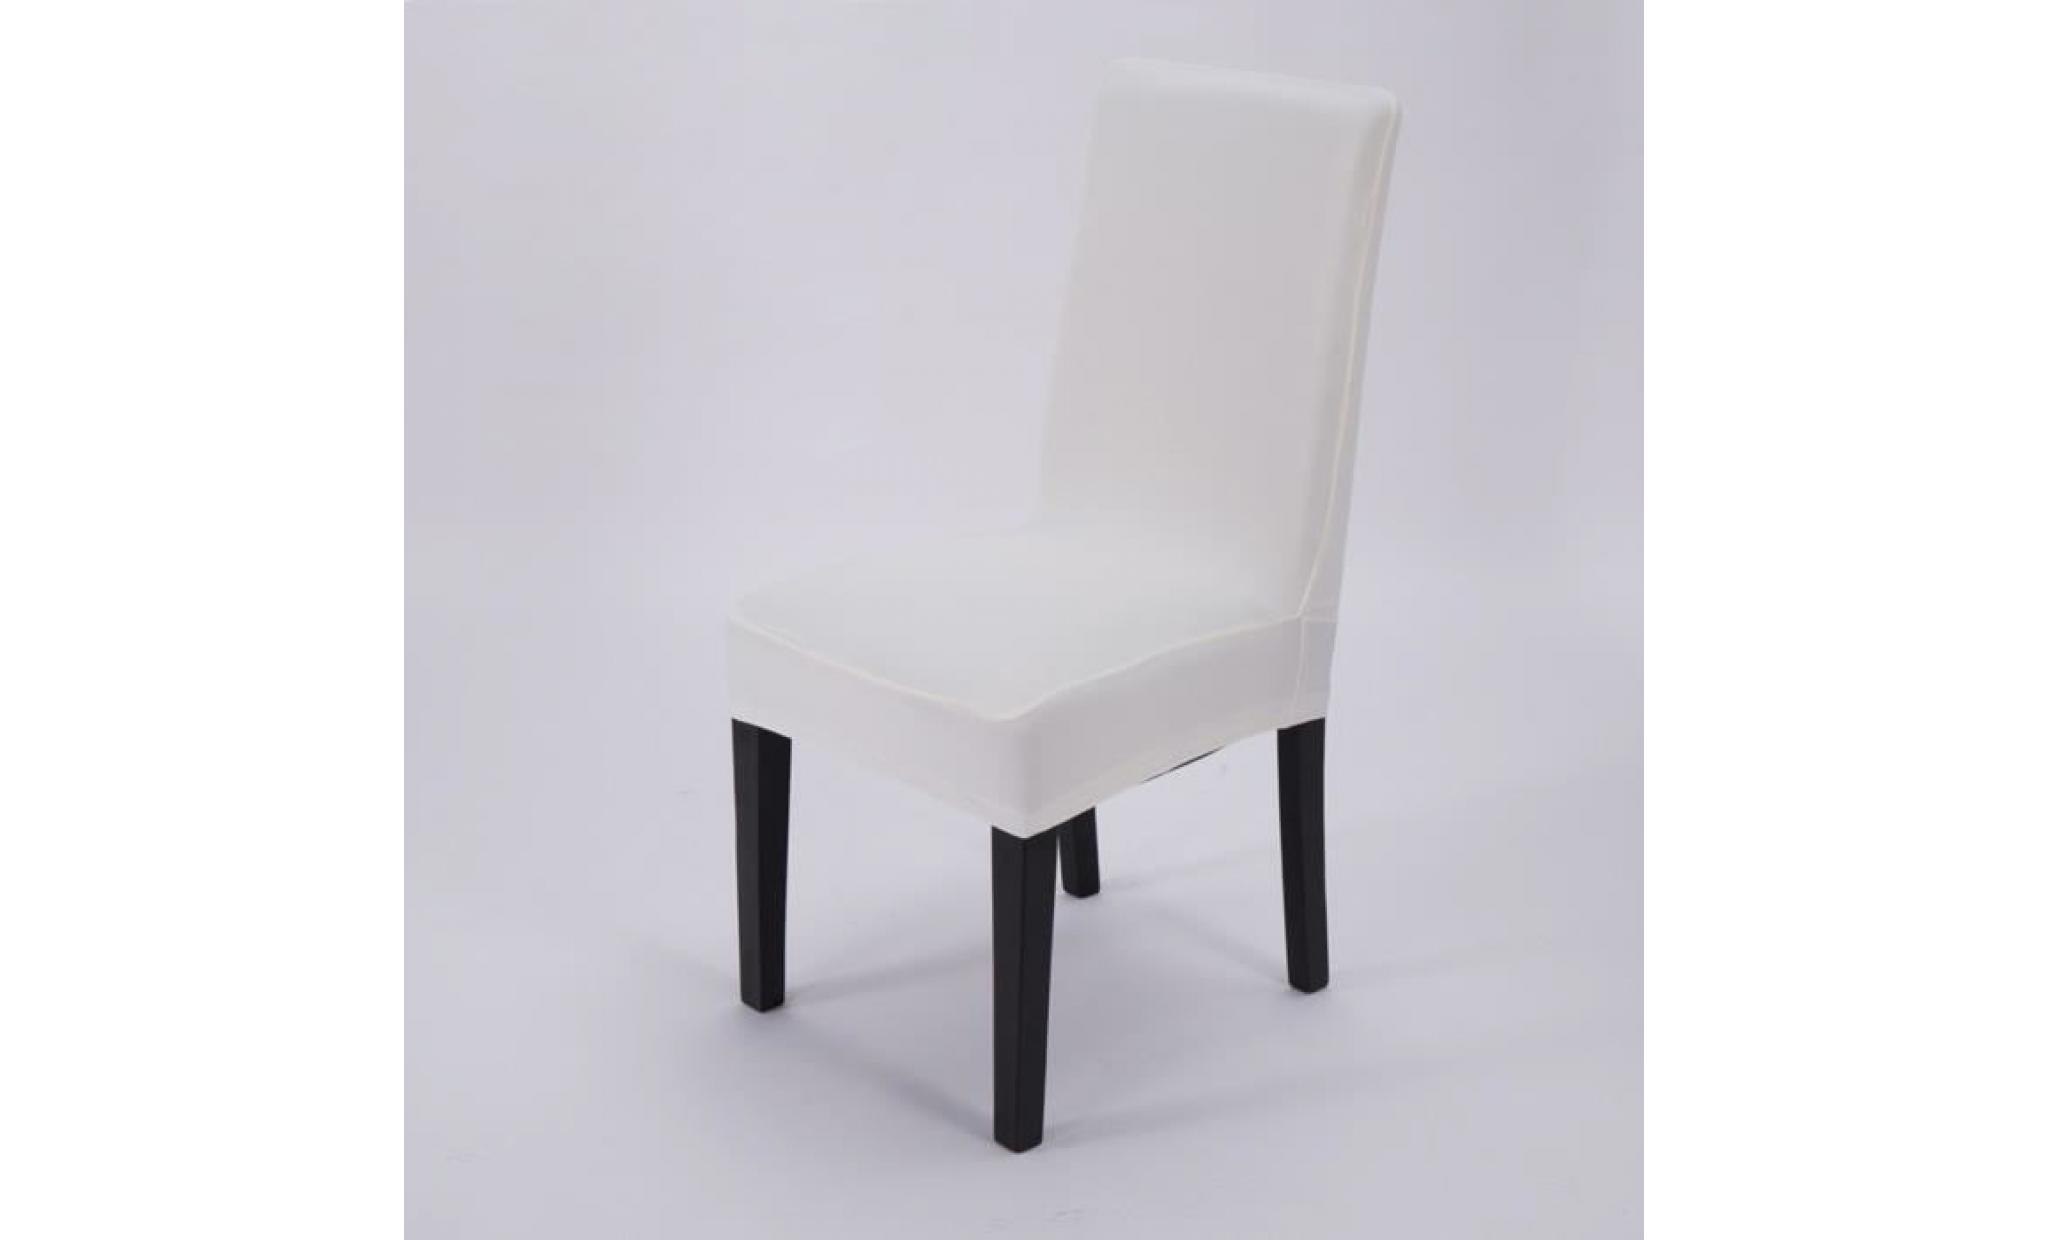 tempsa siège couvre sur la chaise du décor blanc